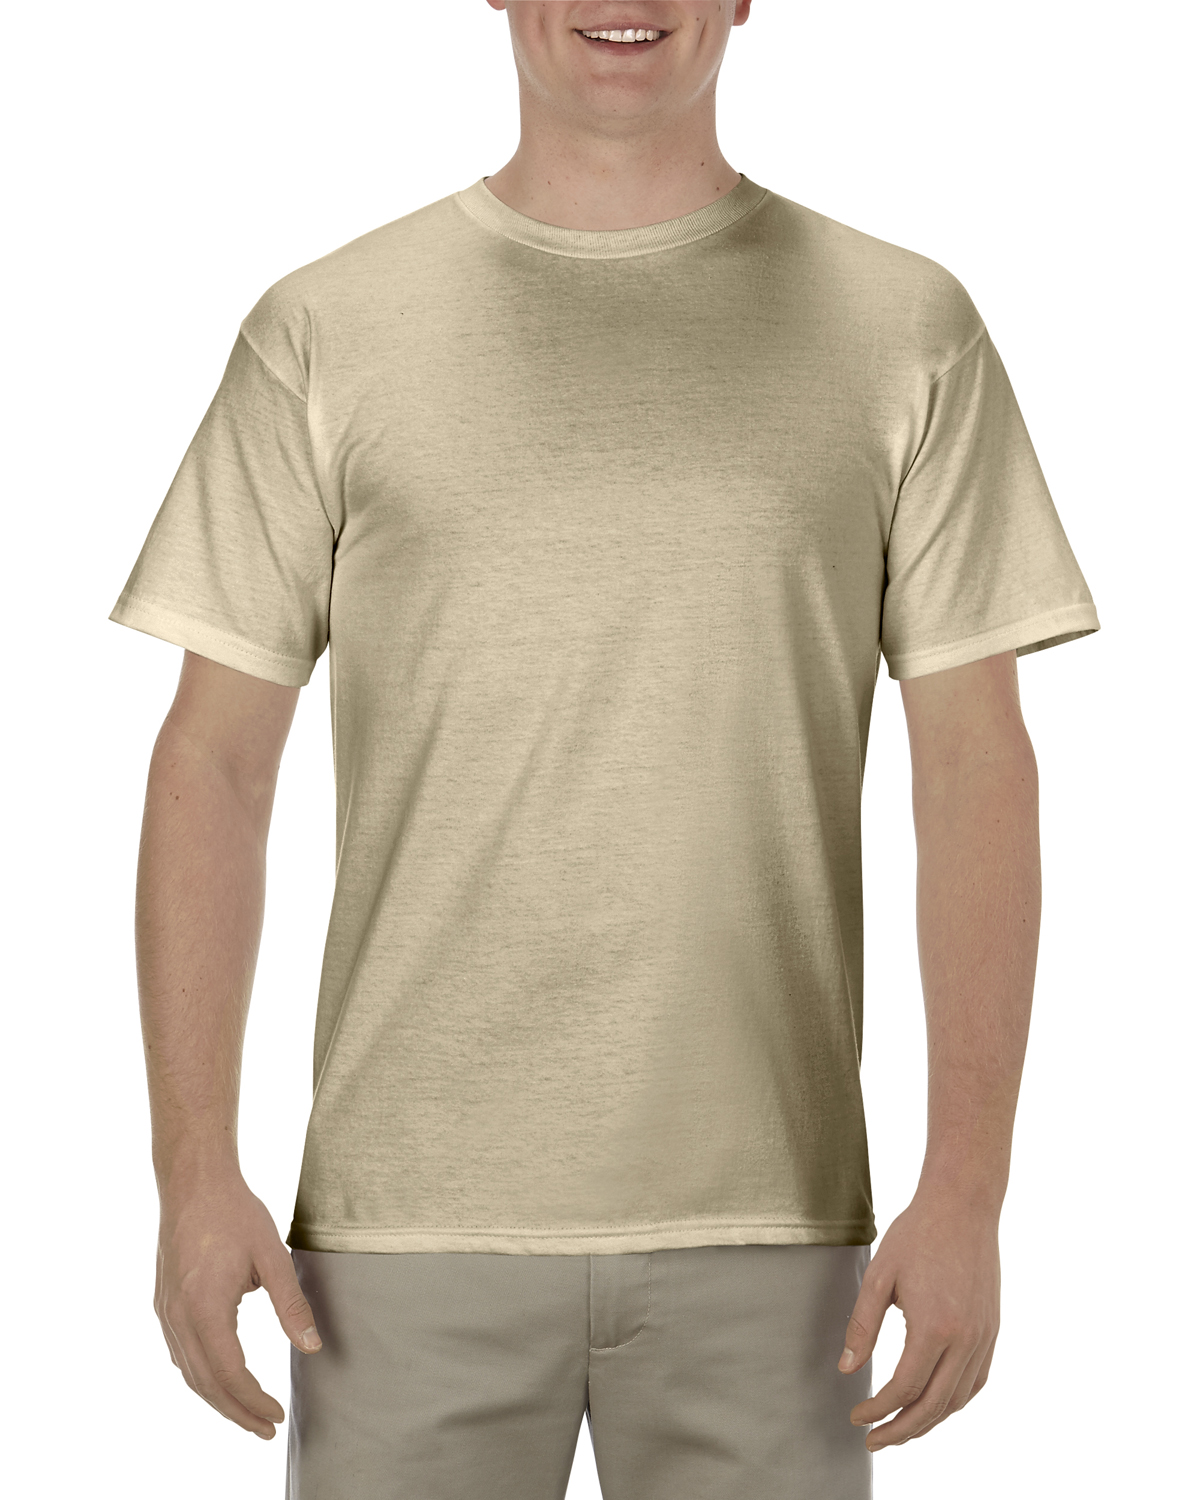 T-Shirt Soft Spun Alstyle Adult 5.5 Cotton oz., ShirtSpace AL1701 | 100% |